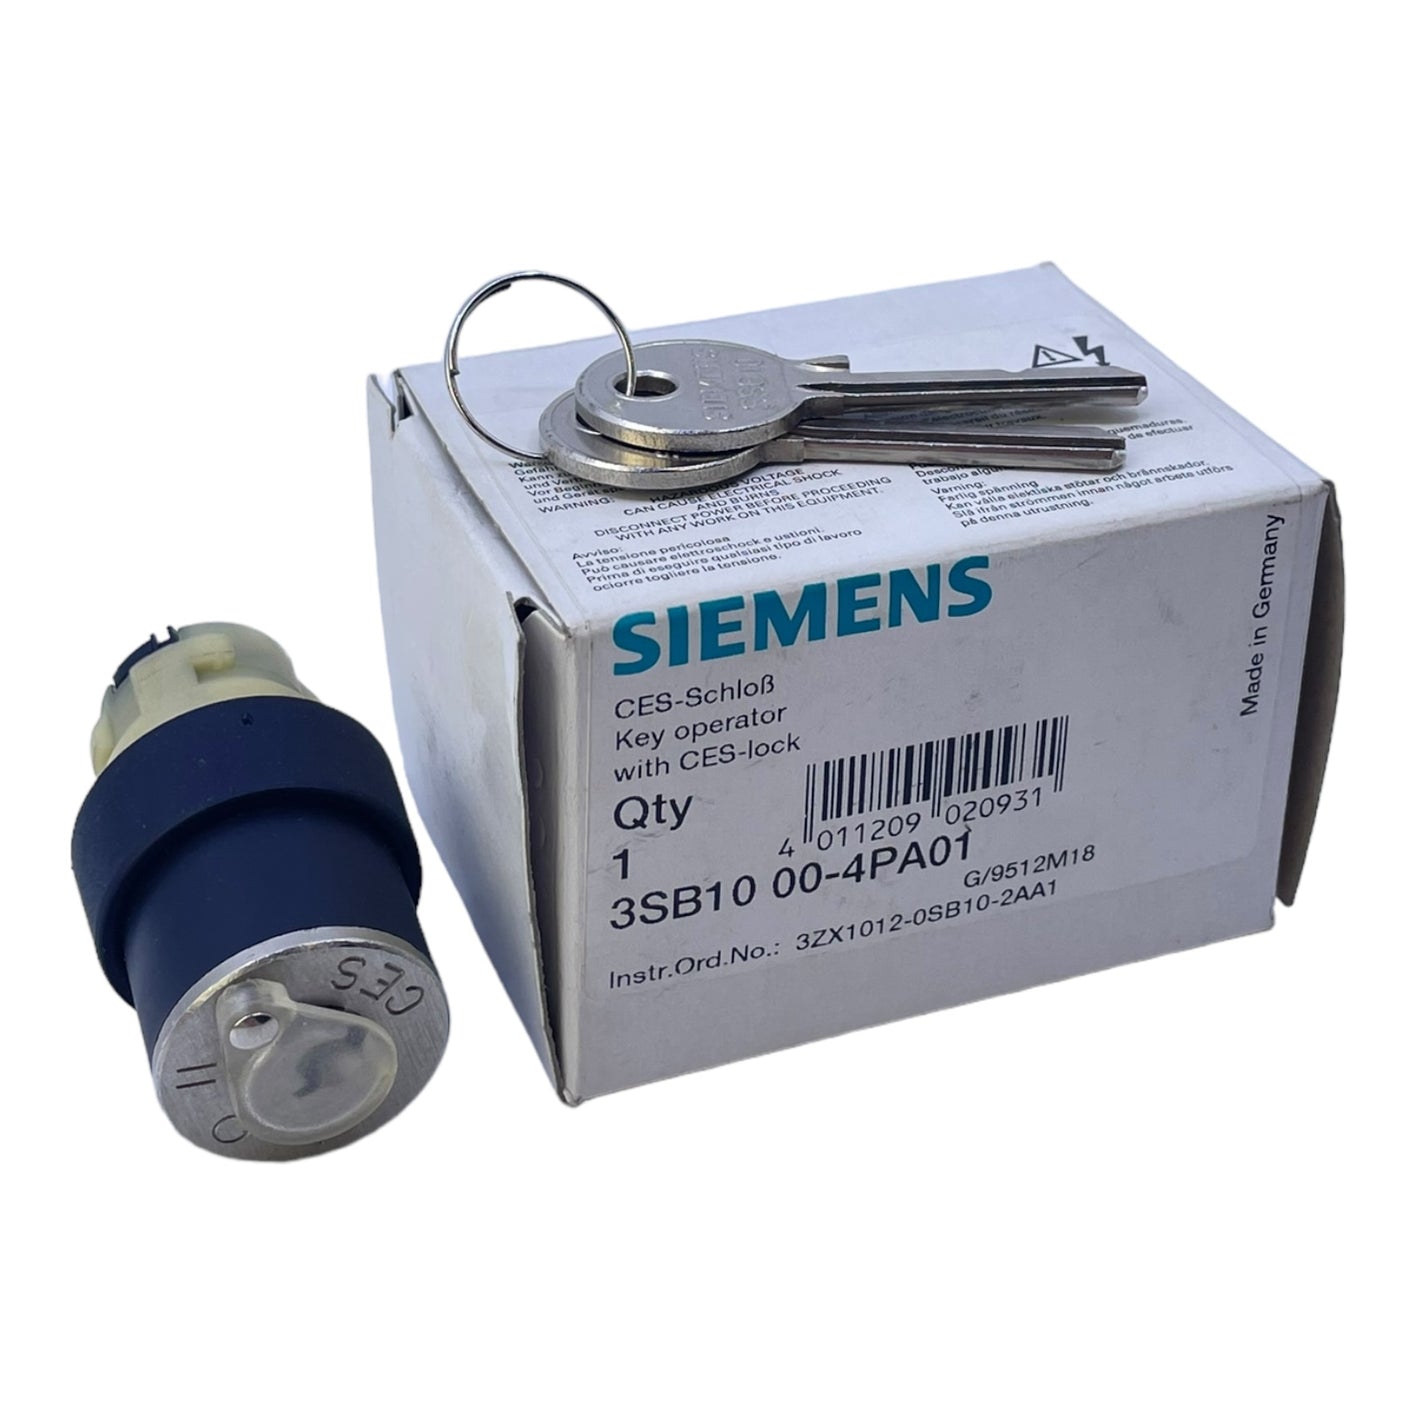 Siemens 3SB1000-4PA01 CES-Schloß